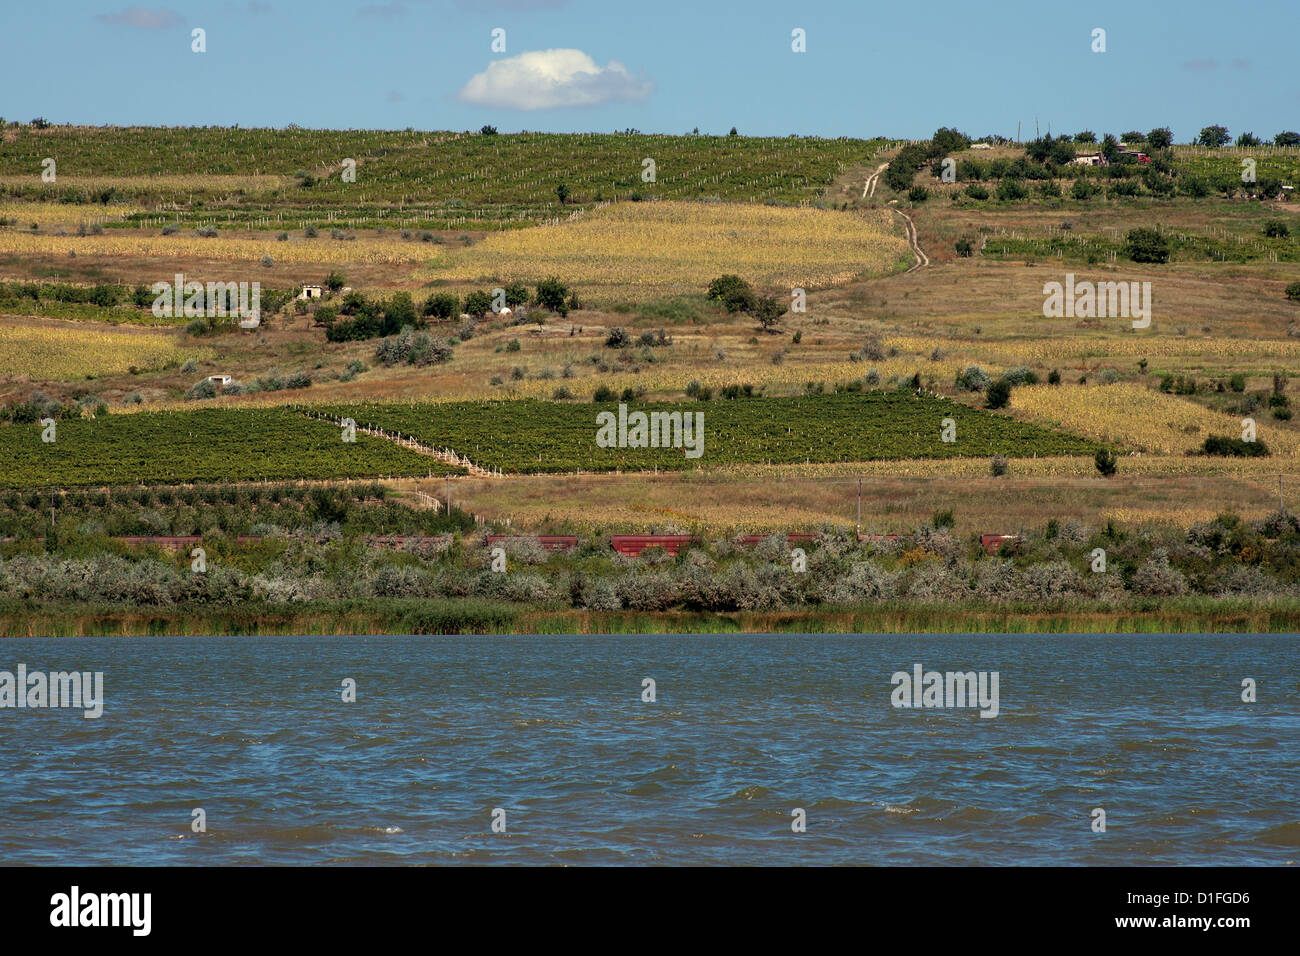 La Moldavia paesaggio con uve sulla collina, treno merci e il lago Foto Stock